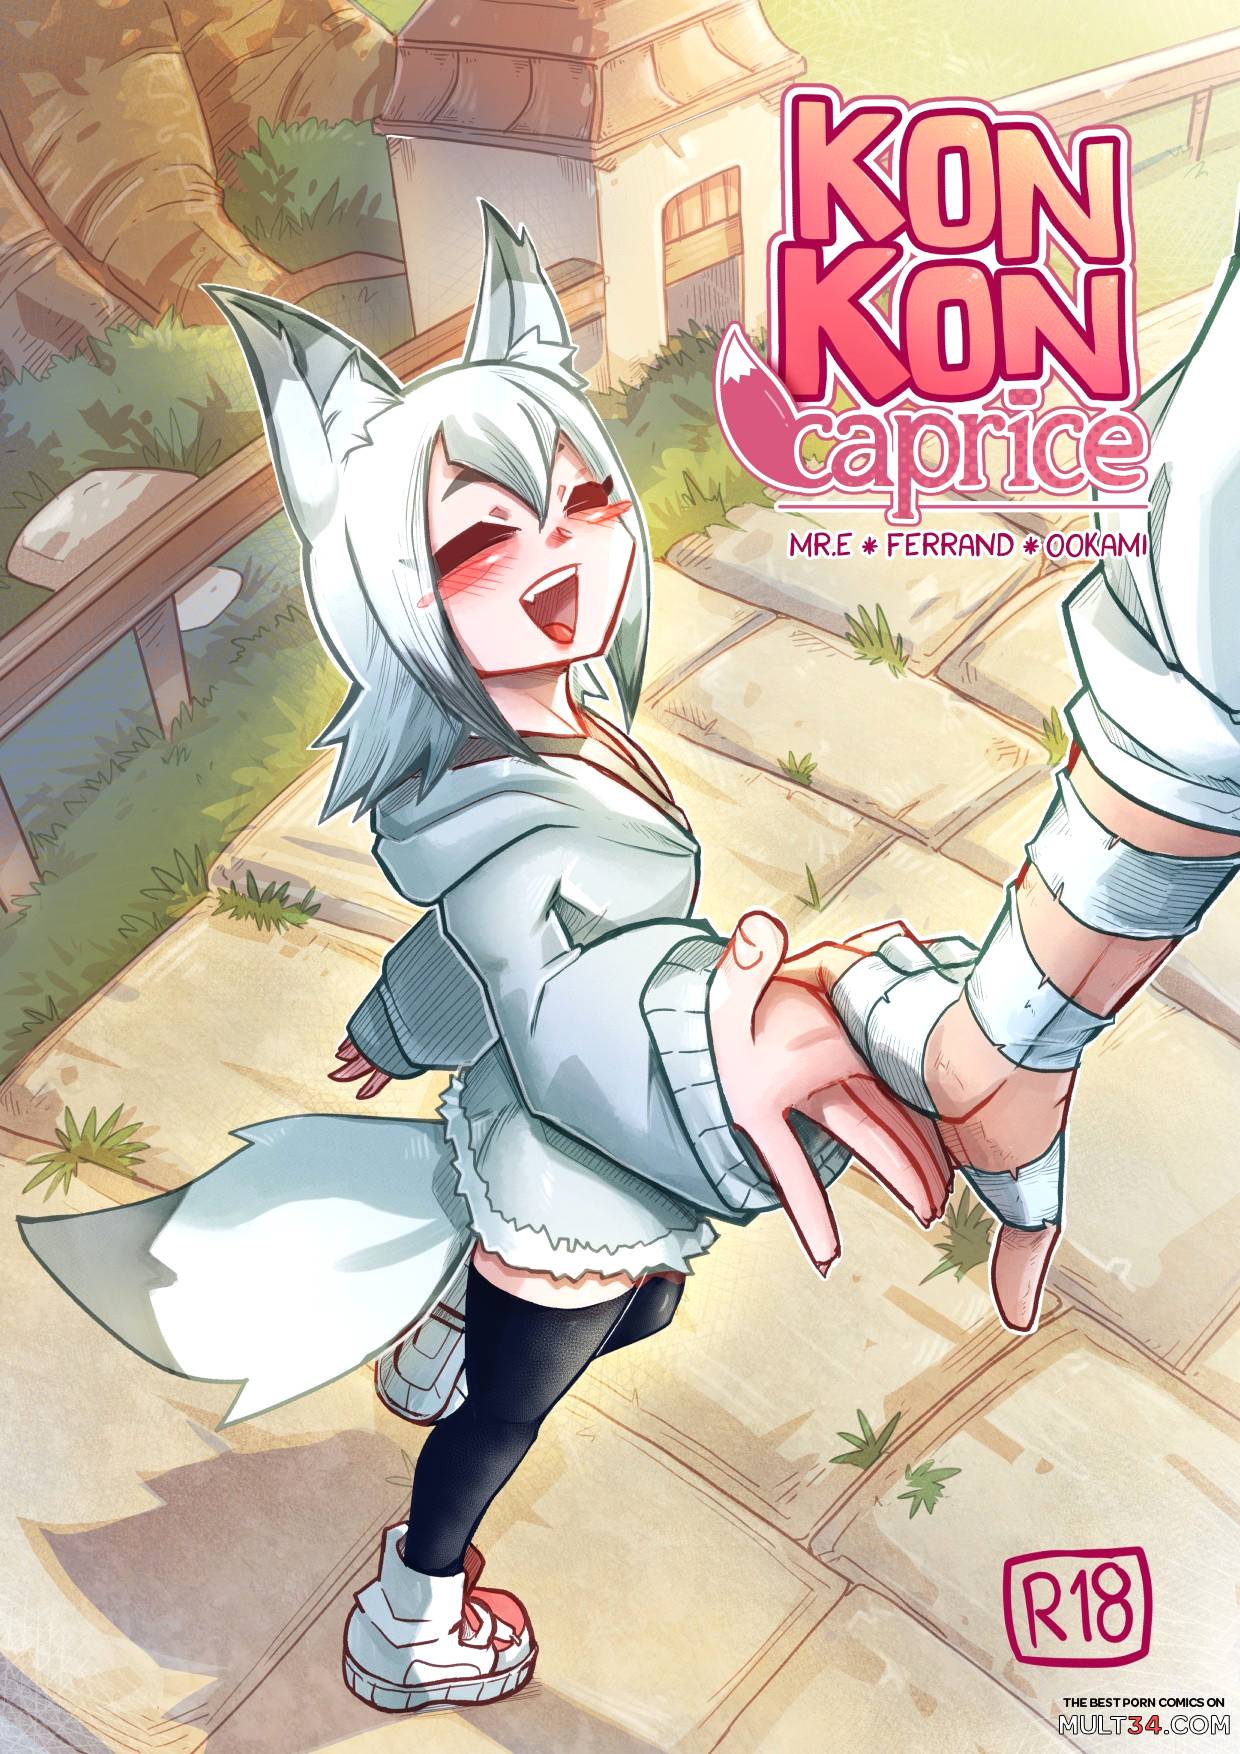 Konporn - Kon Kon Caprice porn comic - the best cartoon porn comics, Rule 34 | MULT34